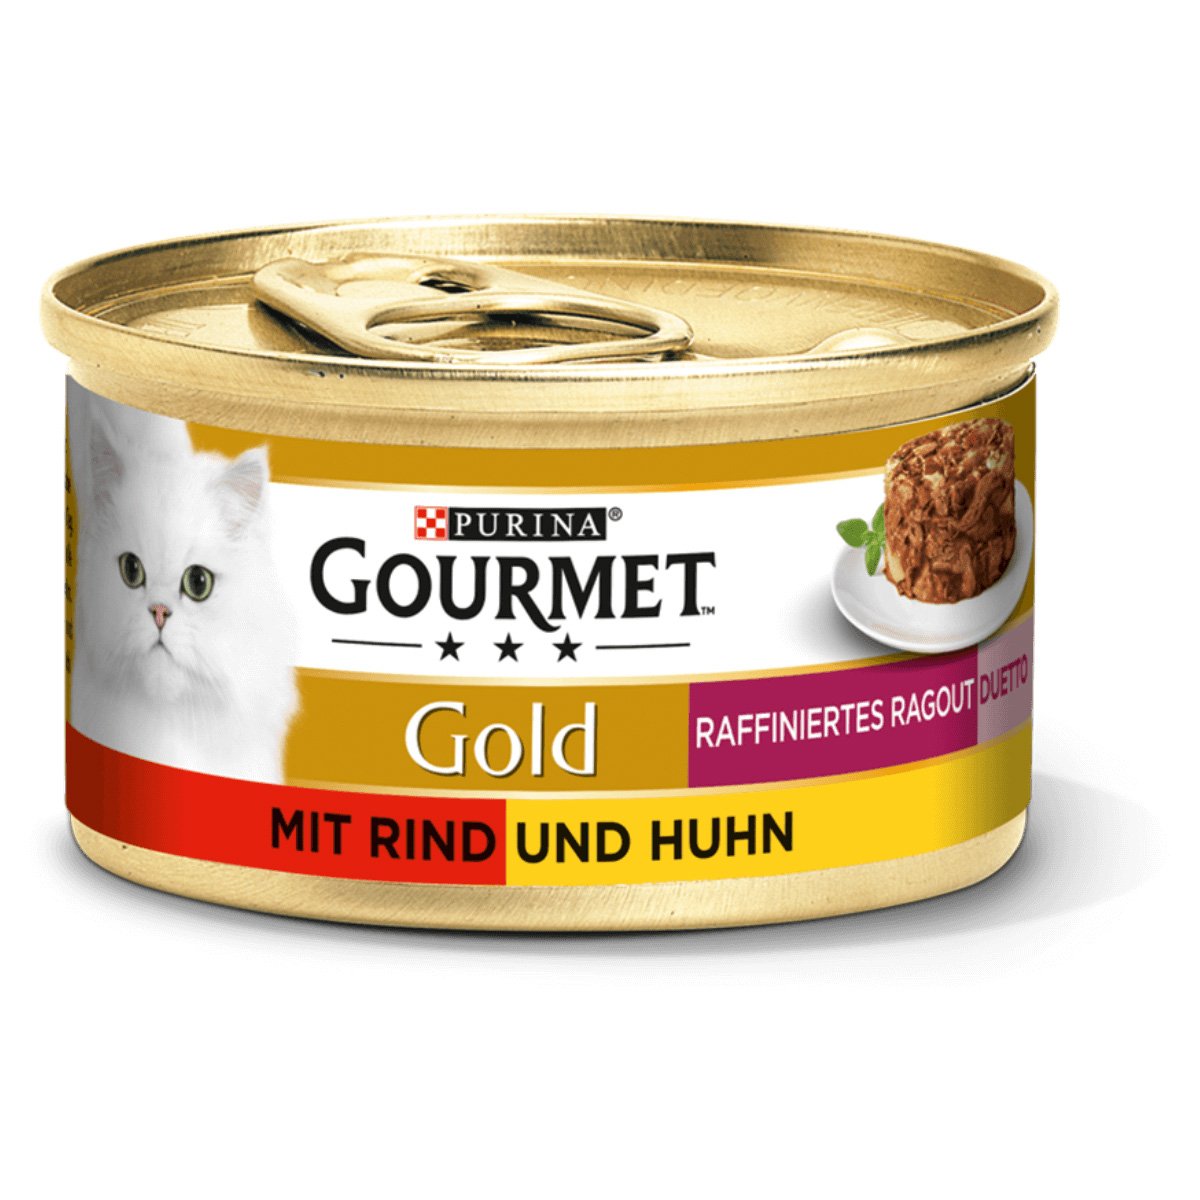 GOURMET Gold Raffiniertes Ragout Duetto mit Rind und Huhn 12x85g von Gourmet